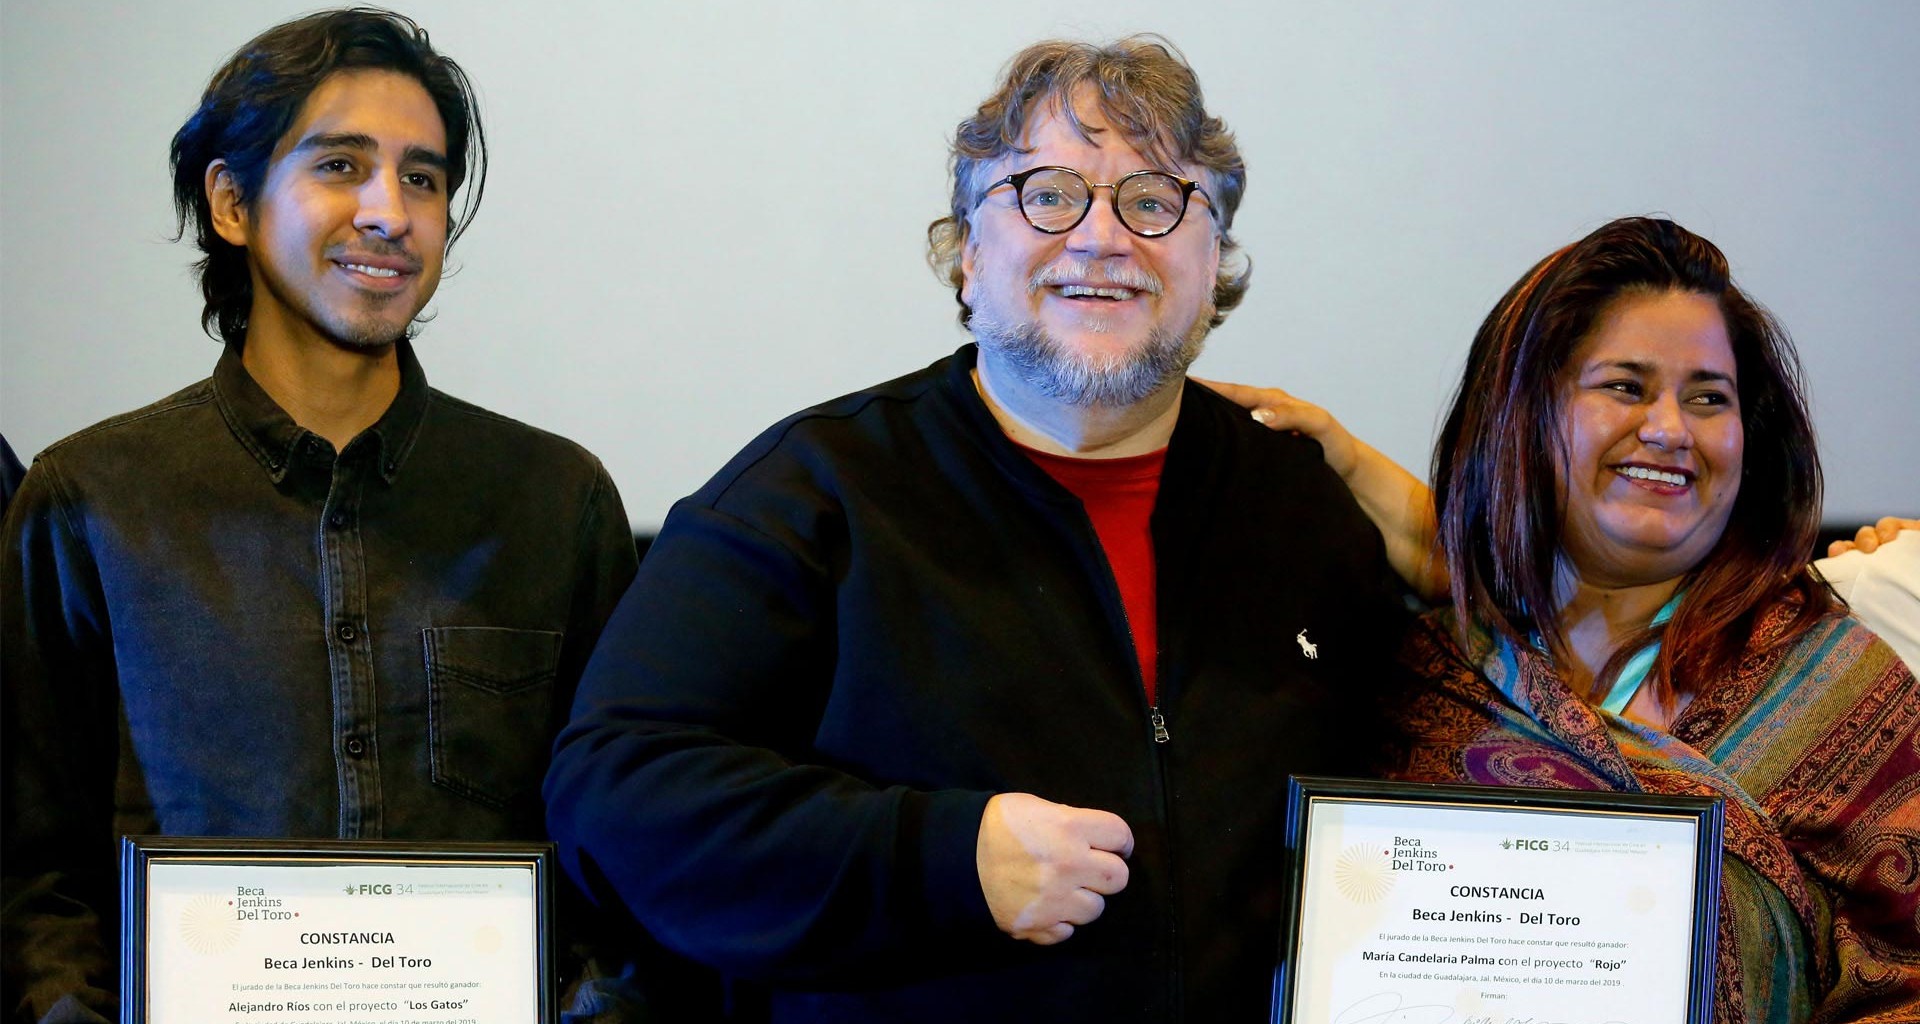 Guillermo del Toro beca a EXATEC para estudiar cine en el extranjero